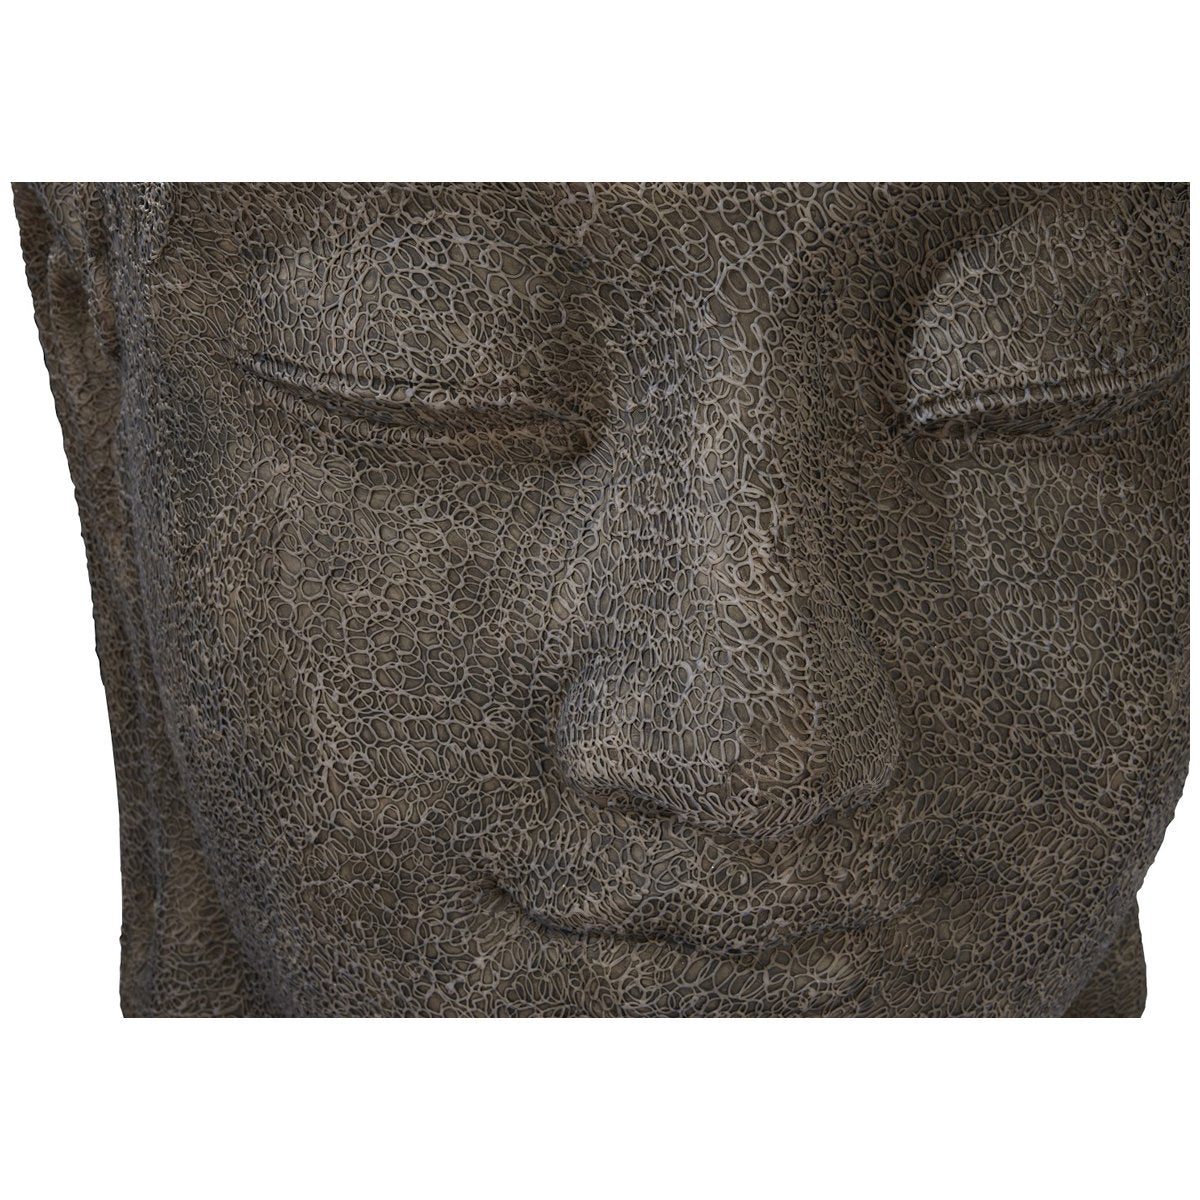 Phillips Collection Buddha Head Illuminated Sculpture